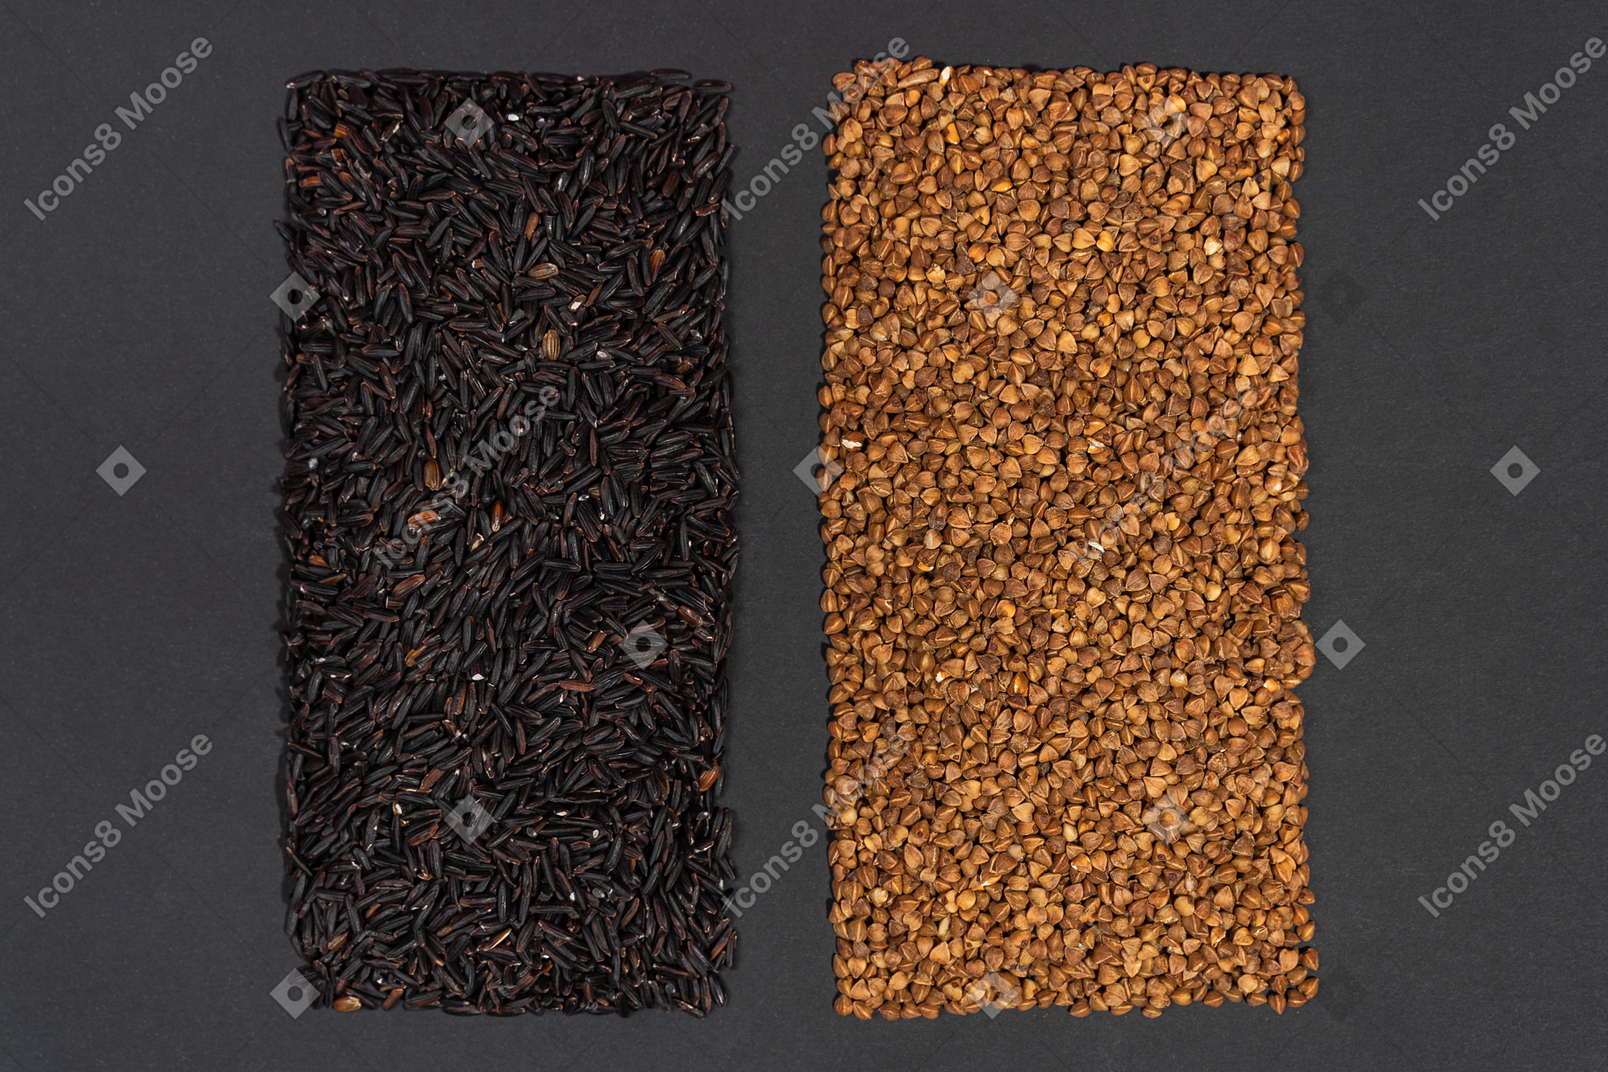 黑米和荞麦的两个矩形形状